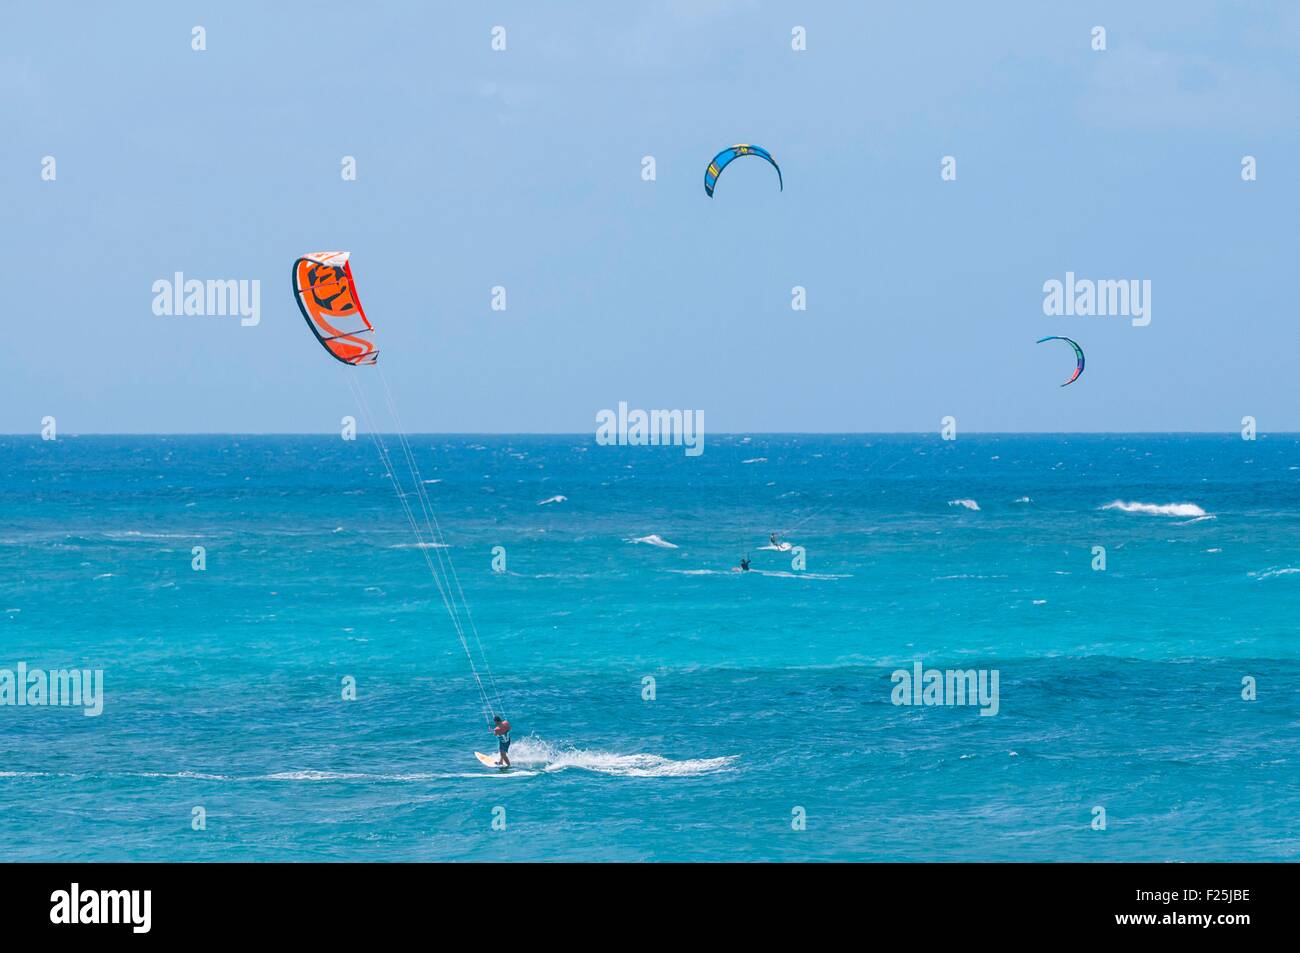 Isola di Barbados, south coast, il Surfer's punto, kitsurf nella parte anteriore del pollice Marlow county, scuola di surf del celebre campione del mondo Alan Burke, Cristo chiesa parrocchiale Foto Stock